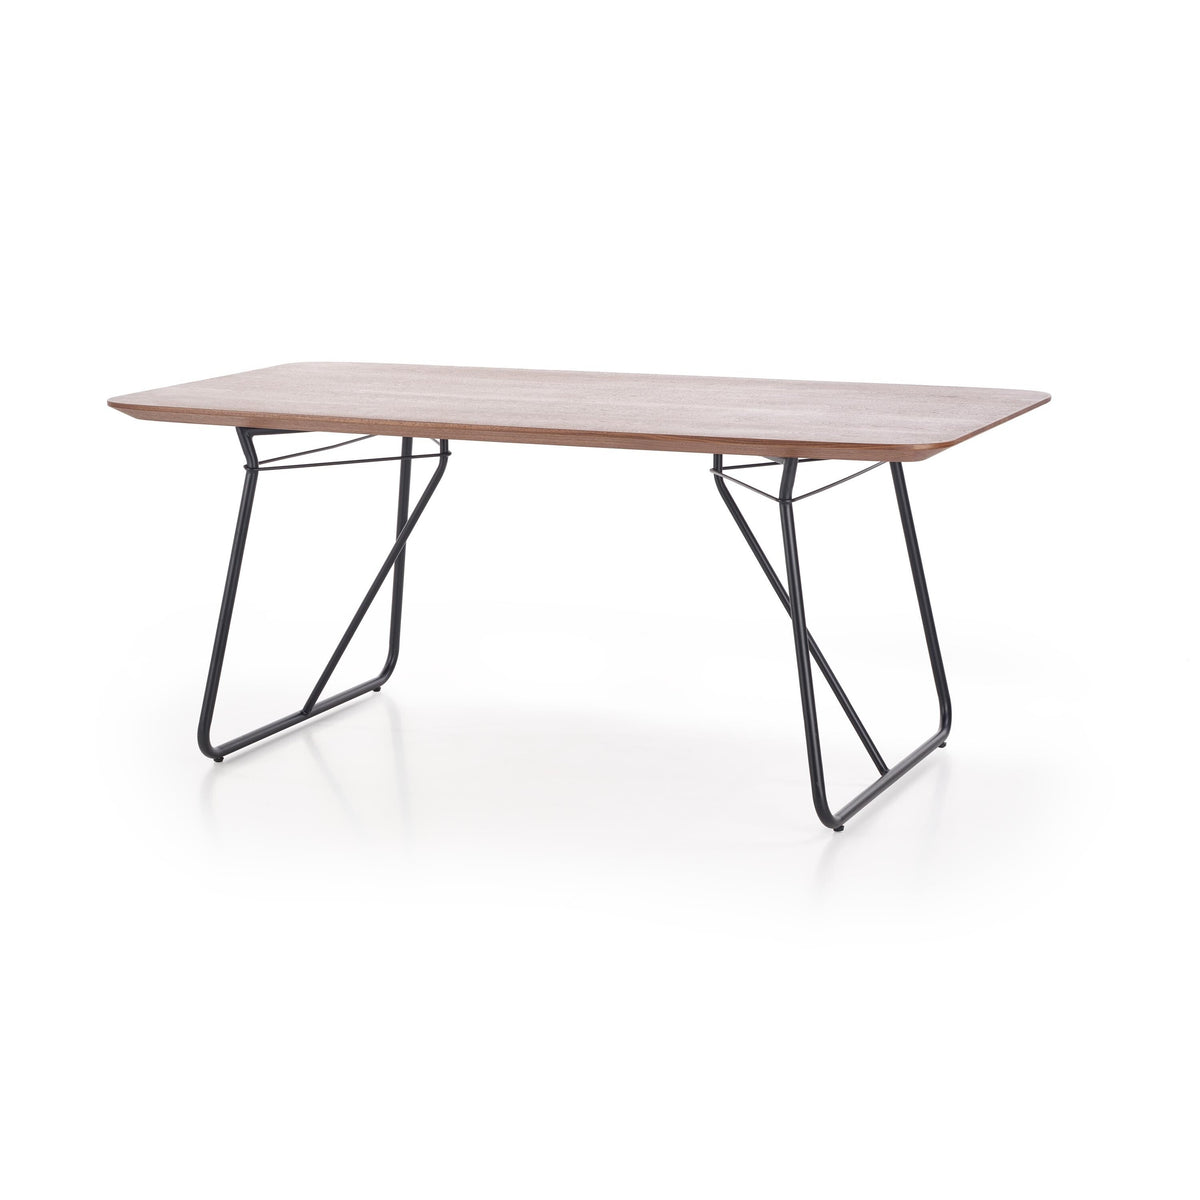 Jedálenský stôl Priva 180x76x90 cm (orech, čierna)